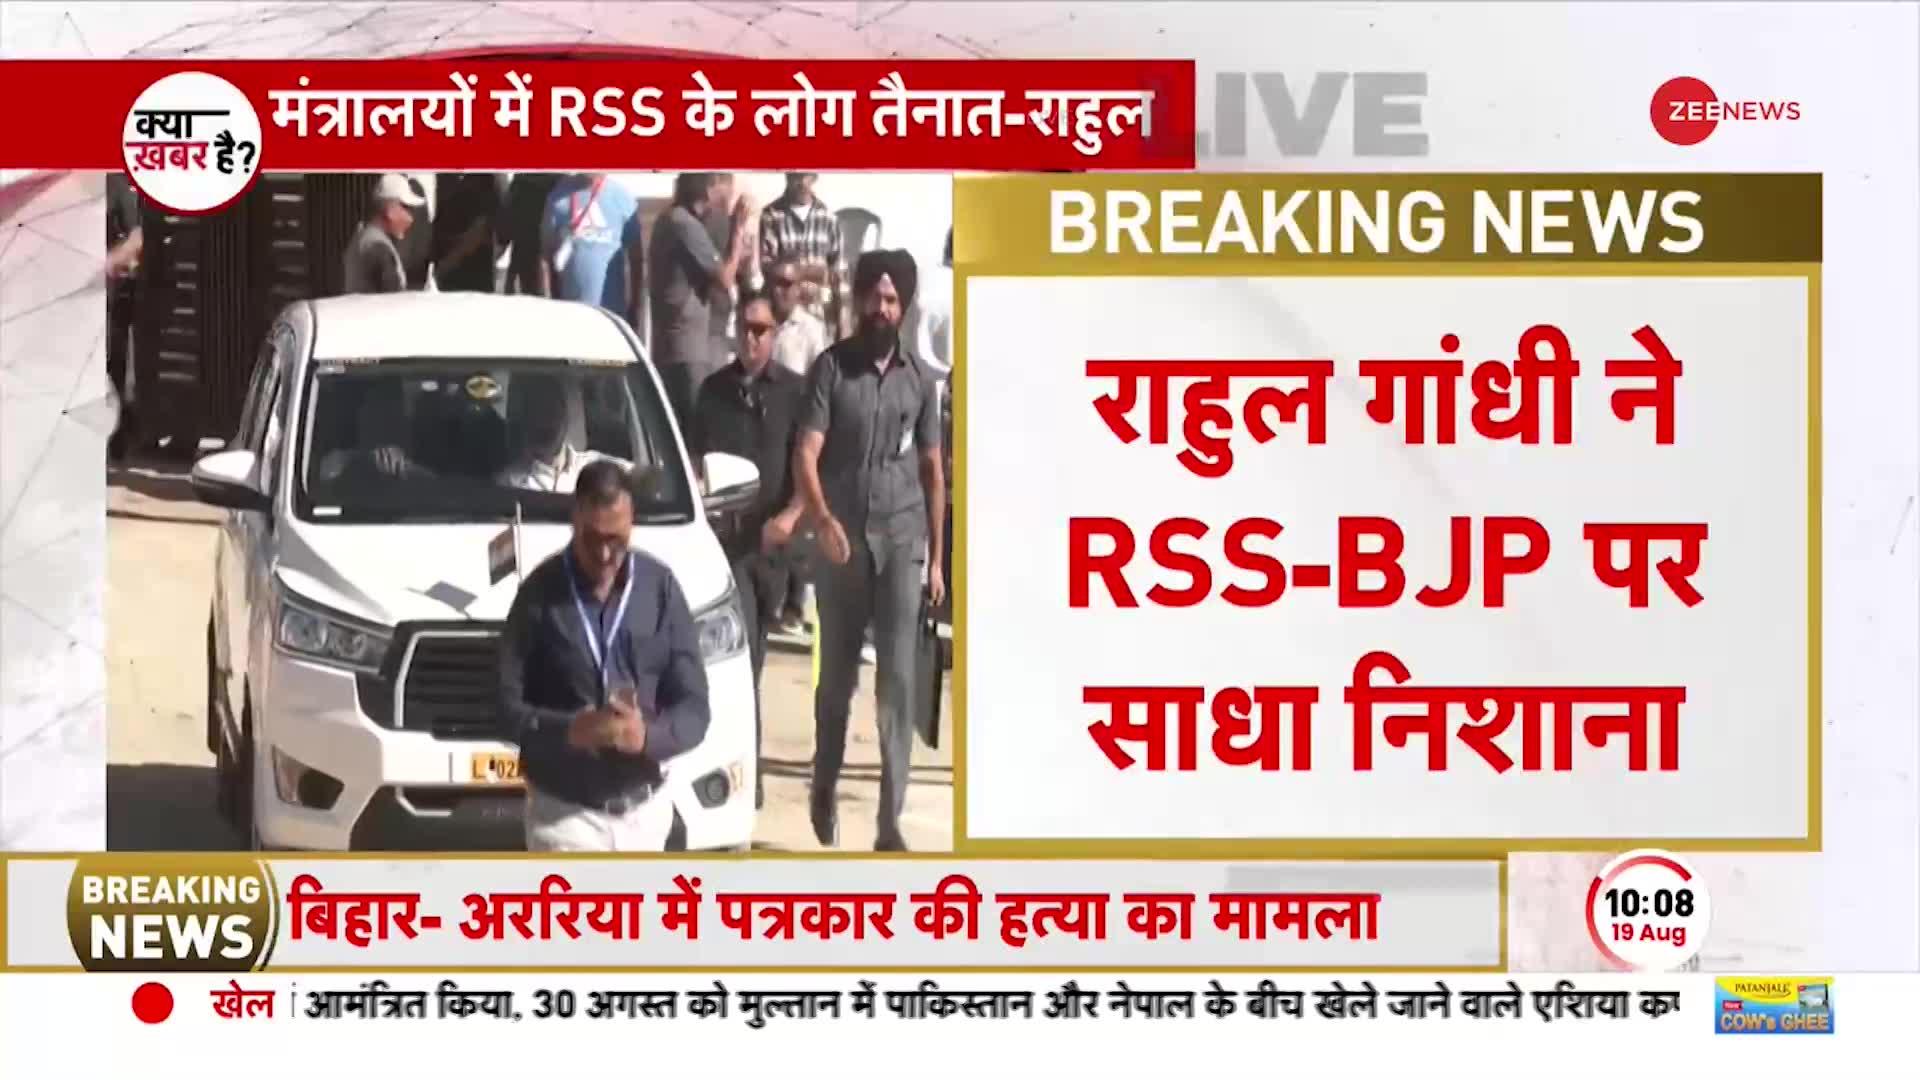 Rahul Gandhi Leh visit: राहुल का बीजेपी-RSS पर बड़ा हमला, RSS के लोग मंत्रालय में लेते हैं फैसले